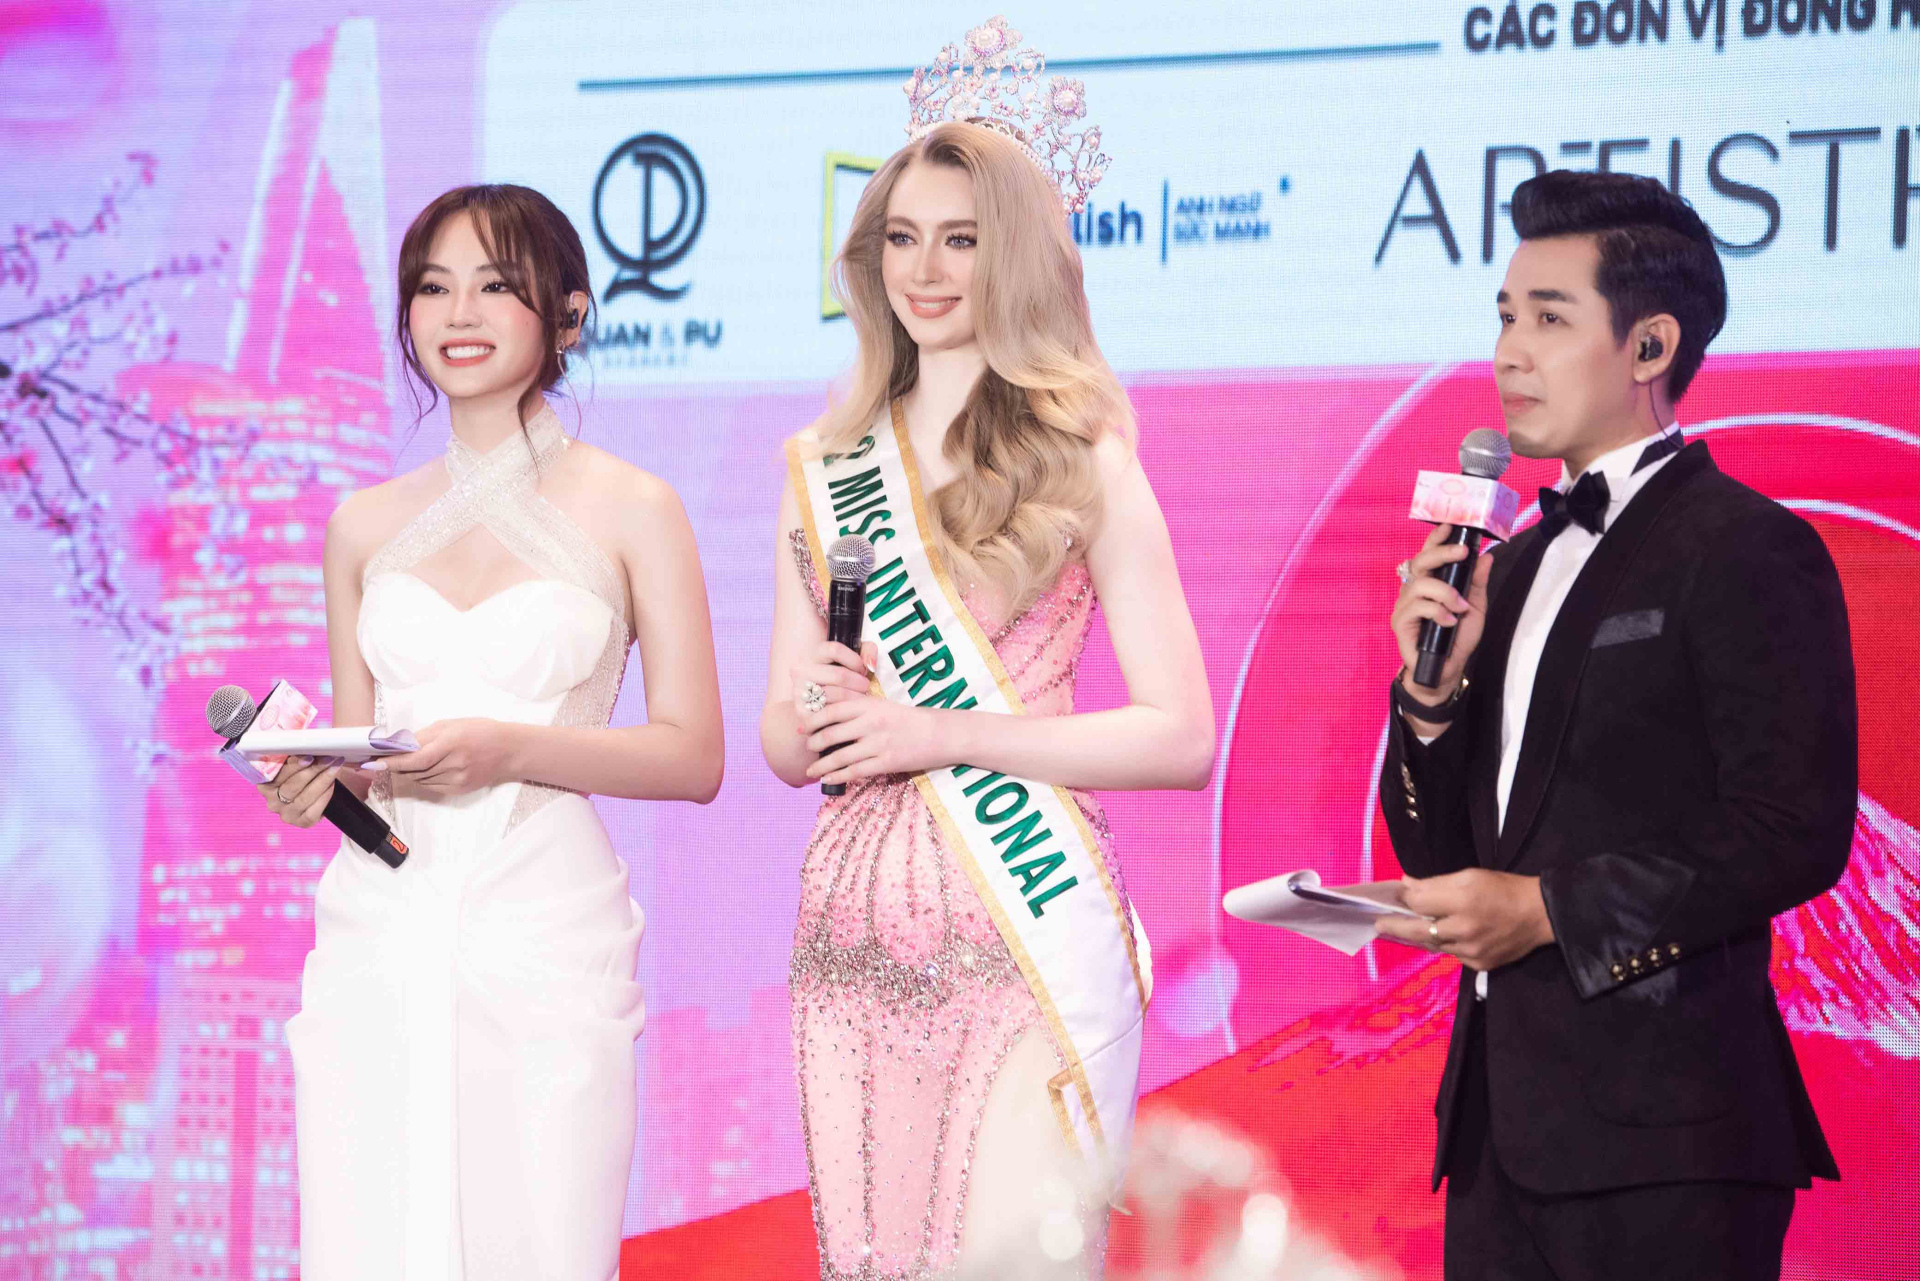 Xuất hiện tại họp báo còn có Hoa hậu Mai Phương đảm nhận vai trò là MC song ngữ dẫn dắt sự kiện.